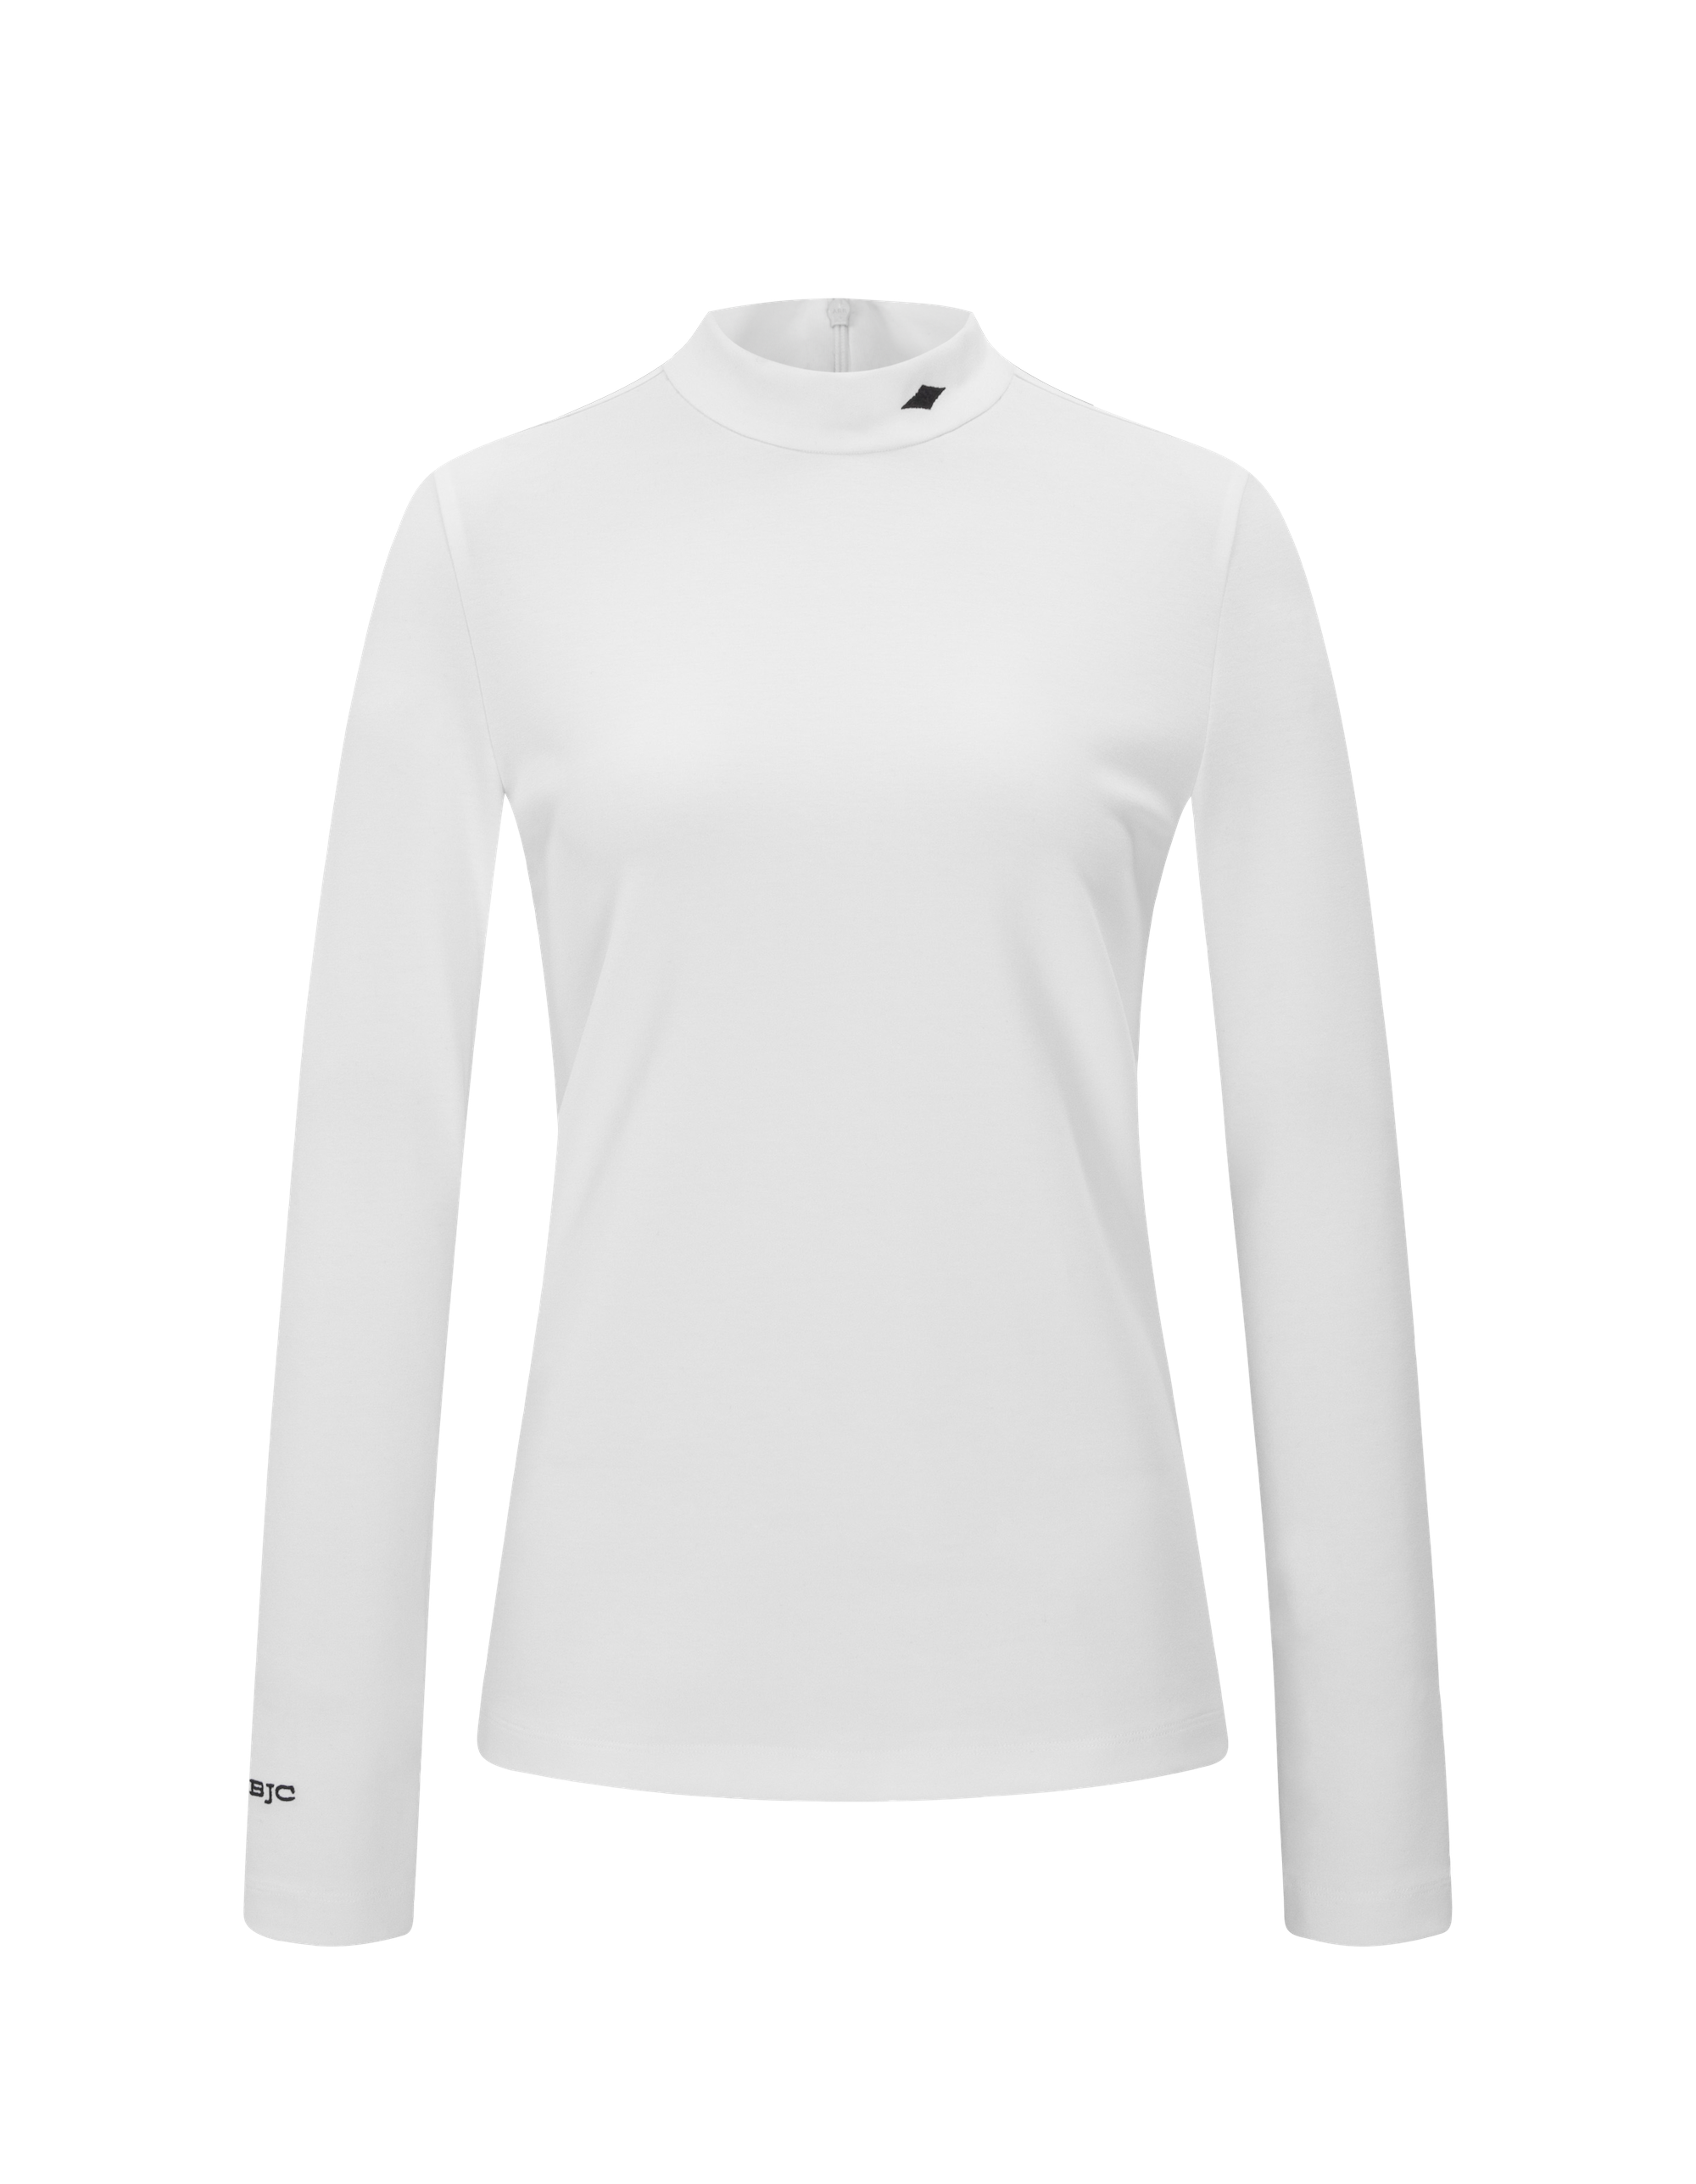 BJC recycled half neck shirt - White